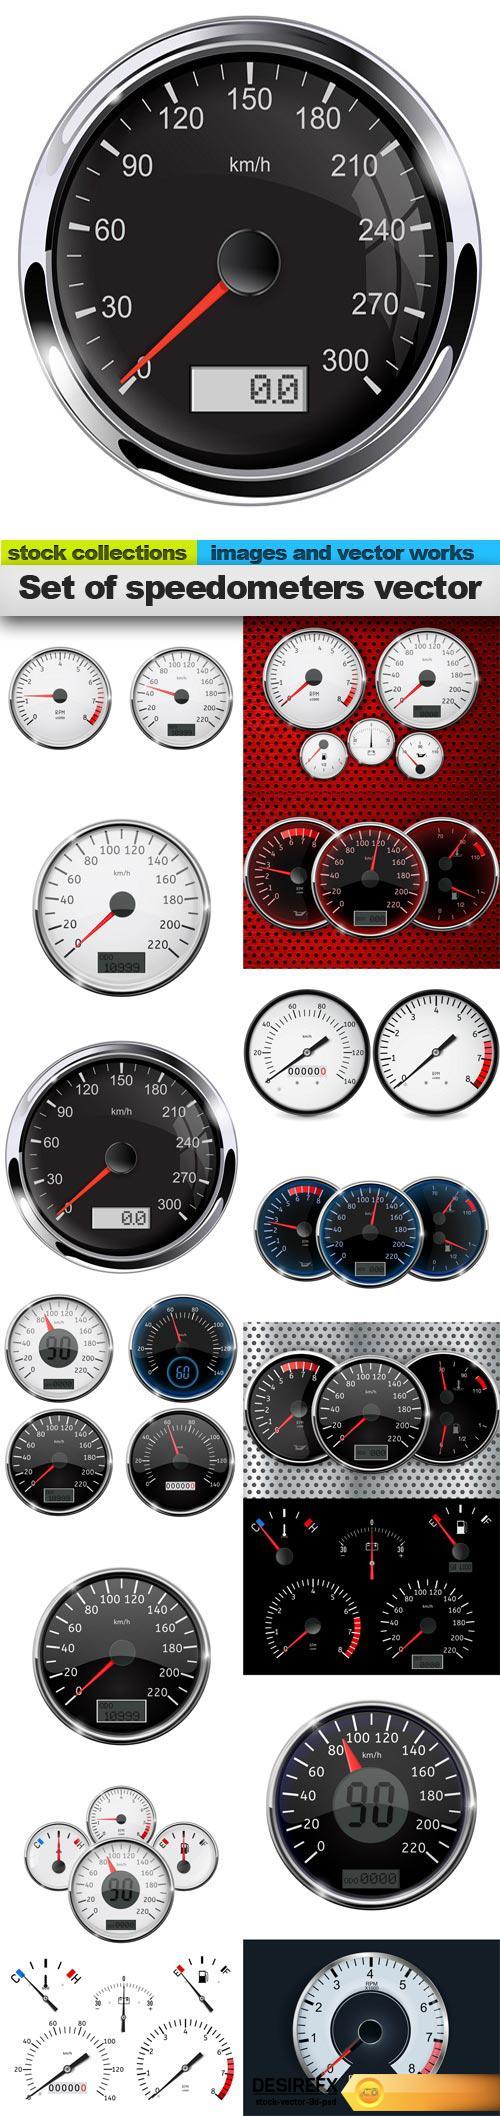 Set of speedometers vector, 15 x EPS